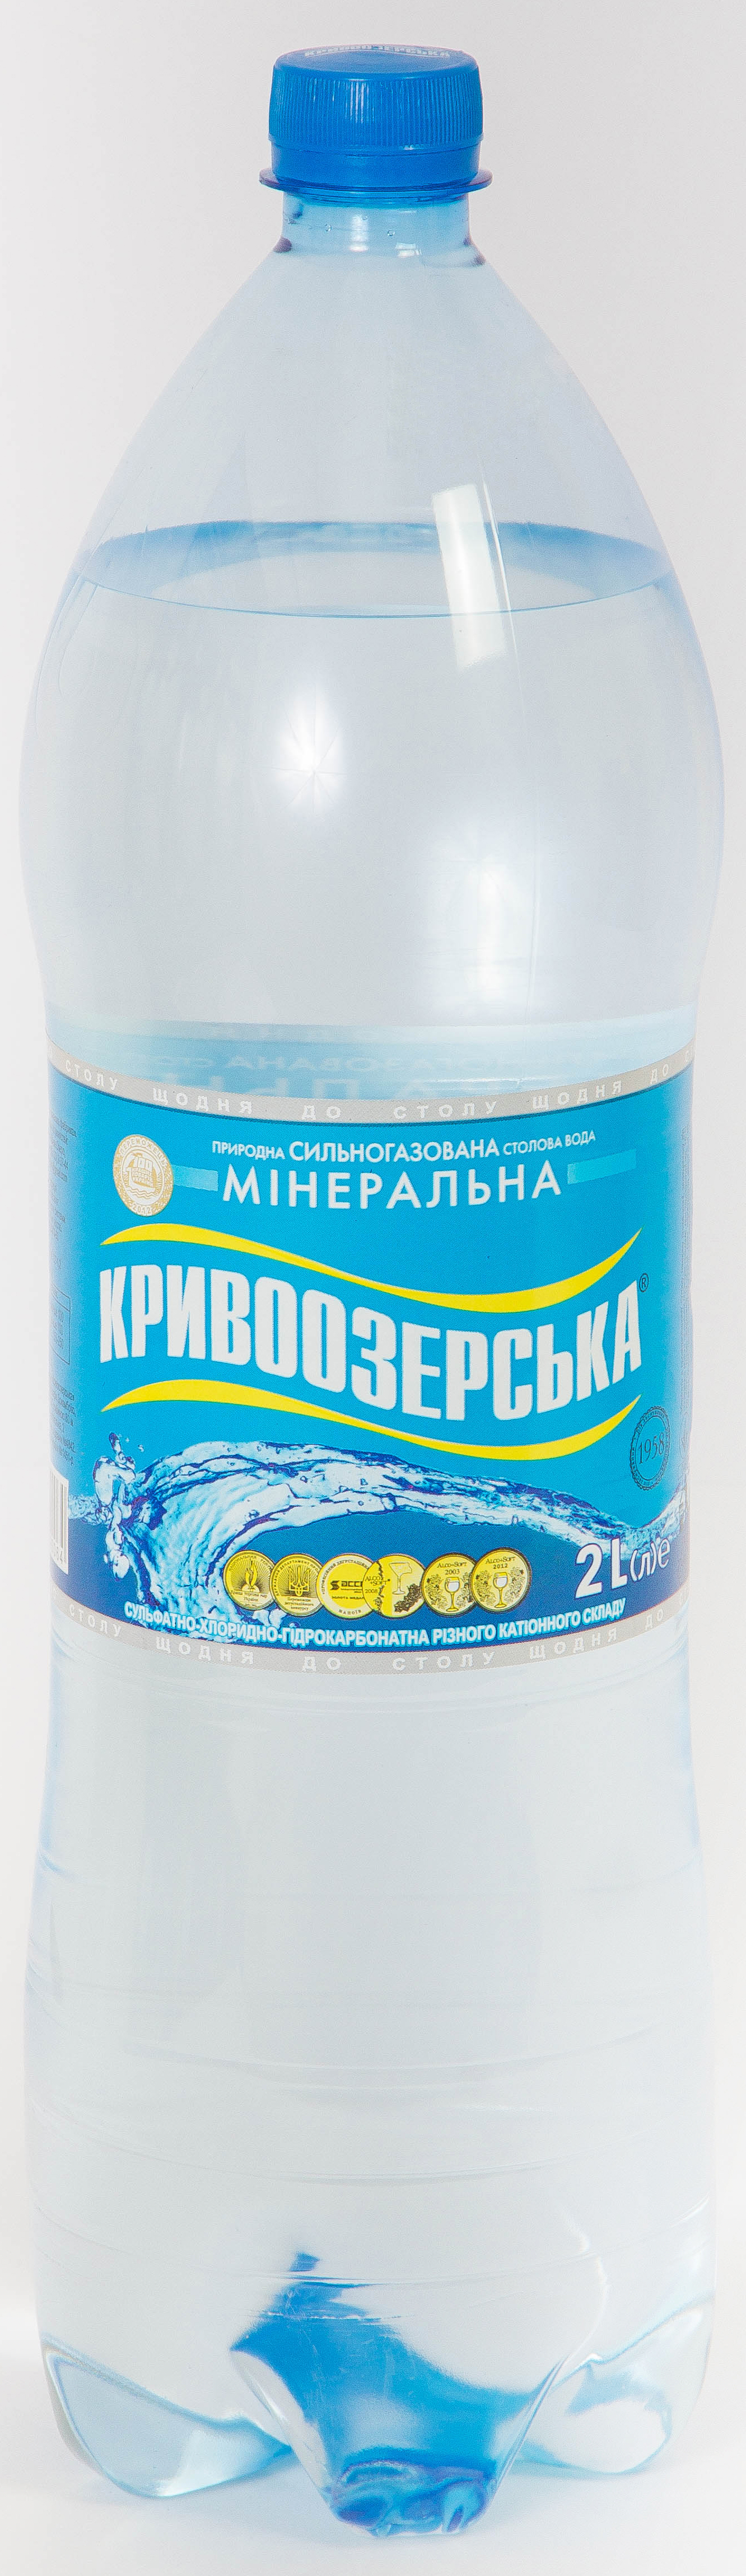 Вода газированная Кривоозерская, 2 л